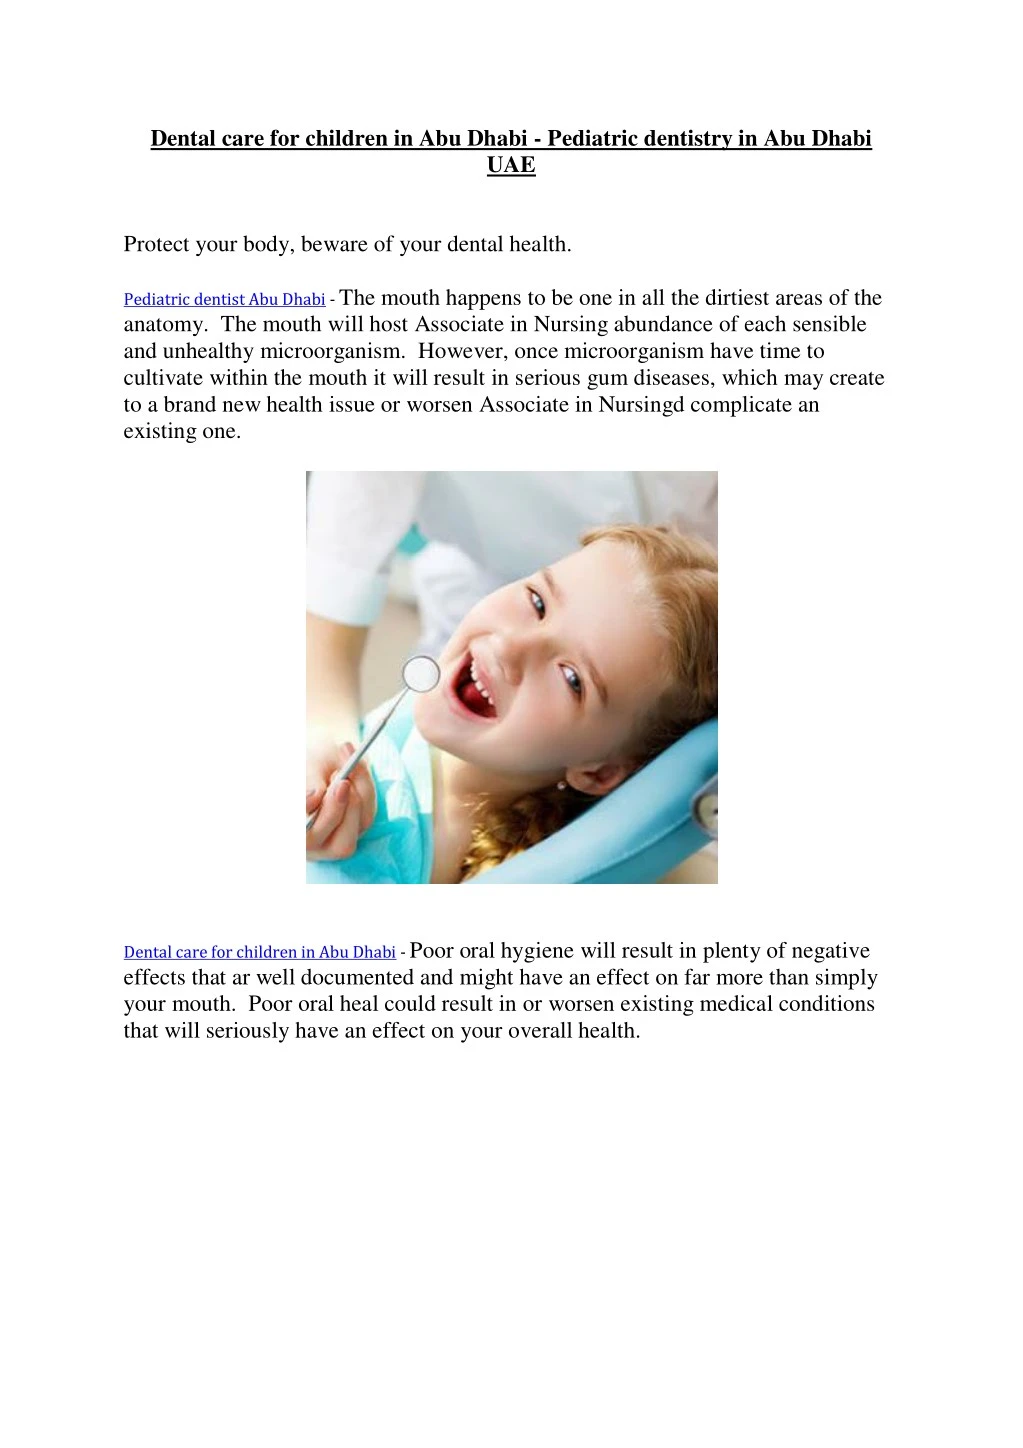 dental care for children in abu dhabi pediatric